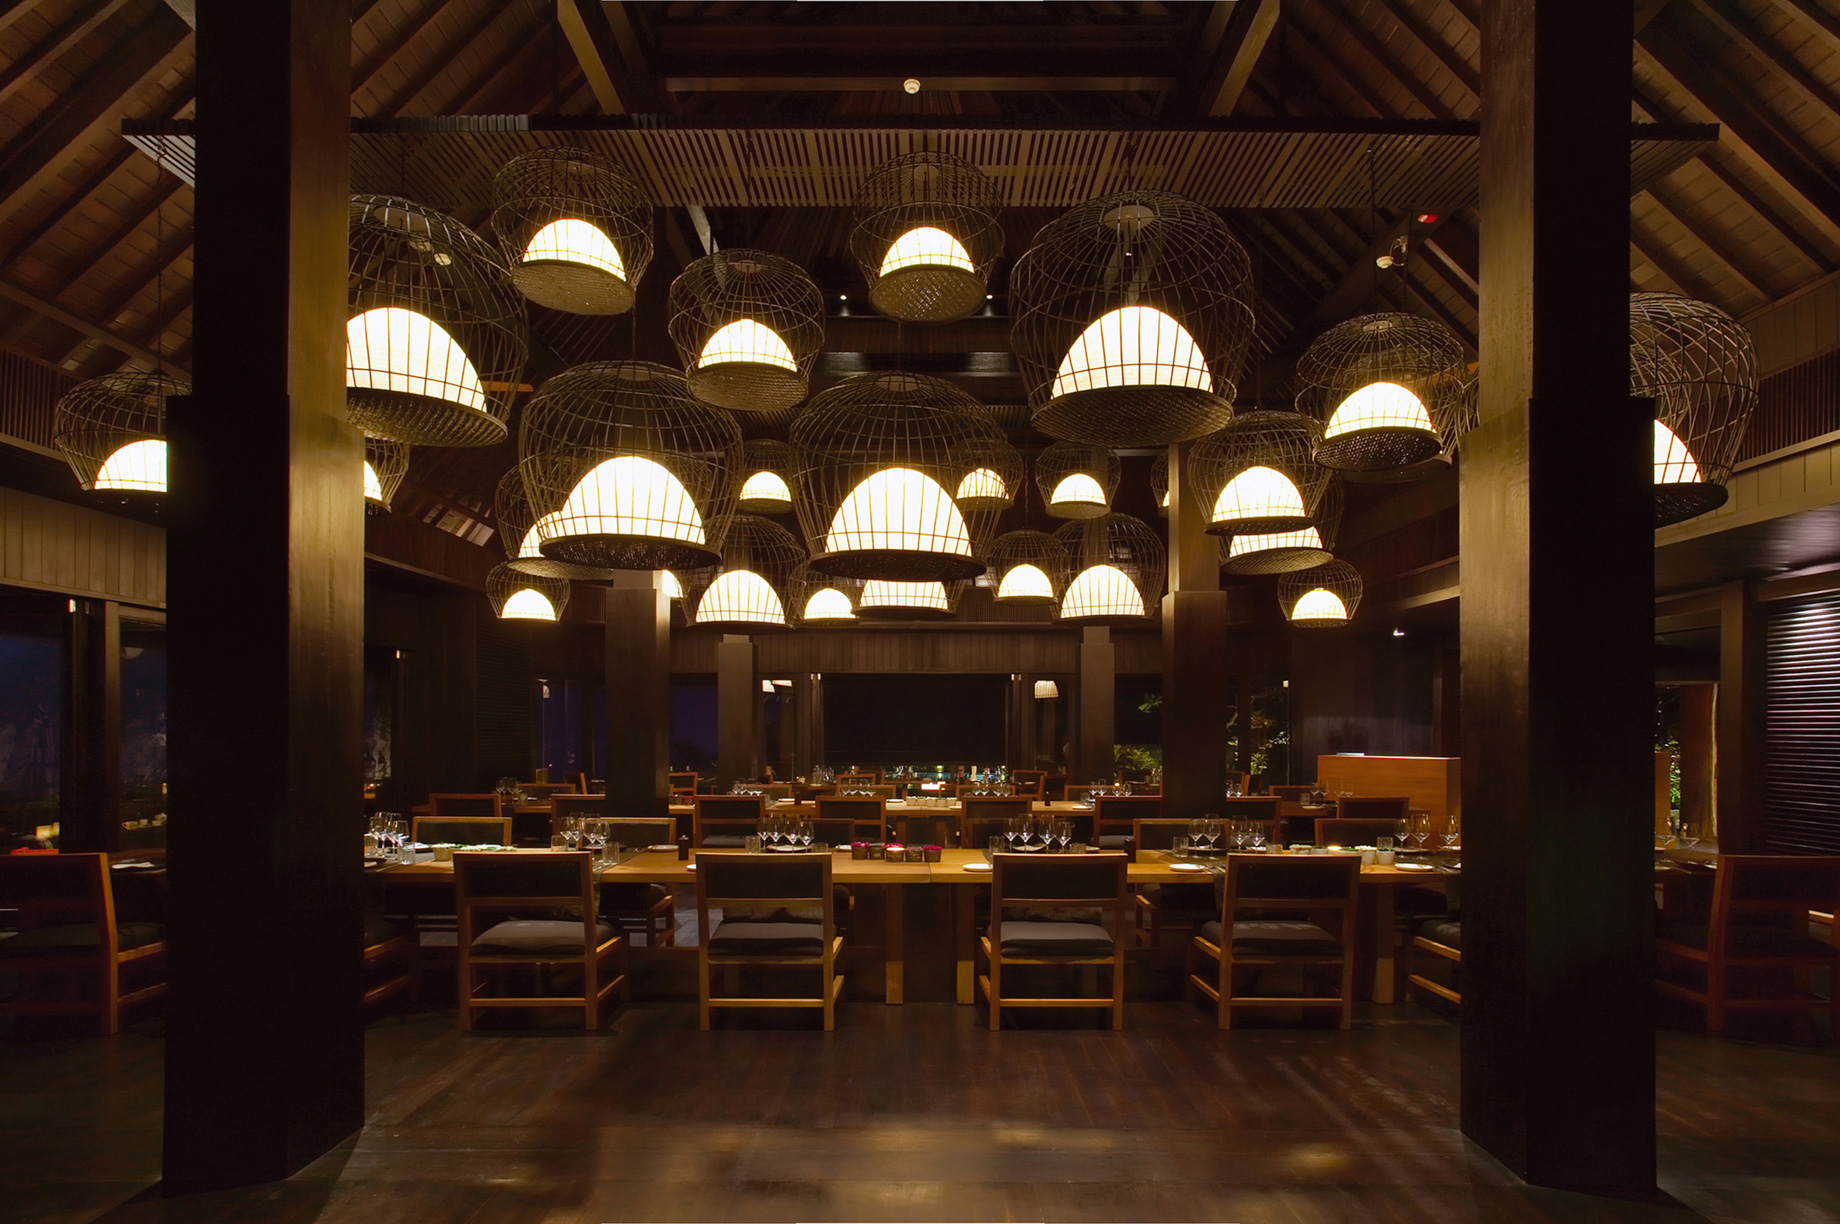 Bvlgari Resort Bali - Uluwatu, Bali, Indonesia - The Sangkar Restaurant Night